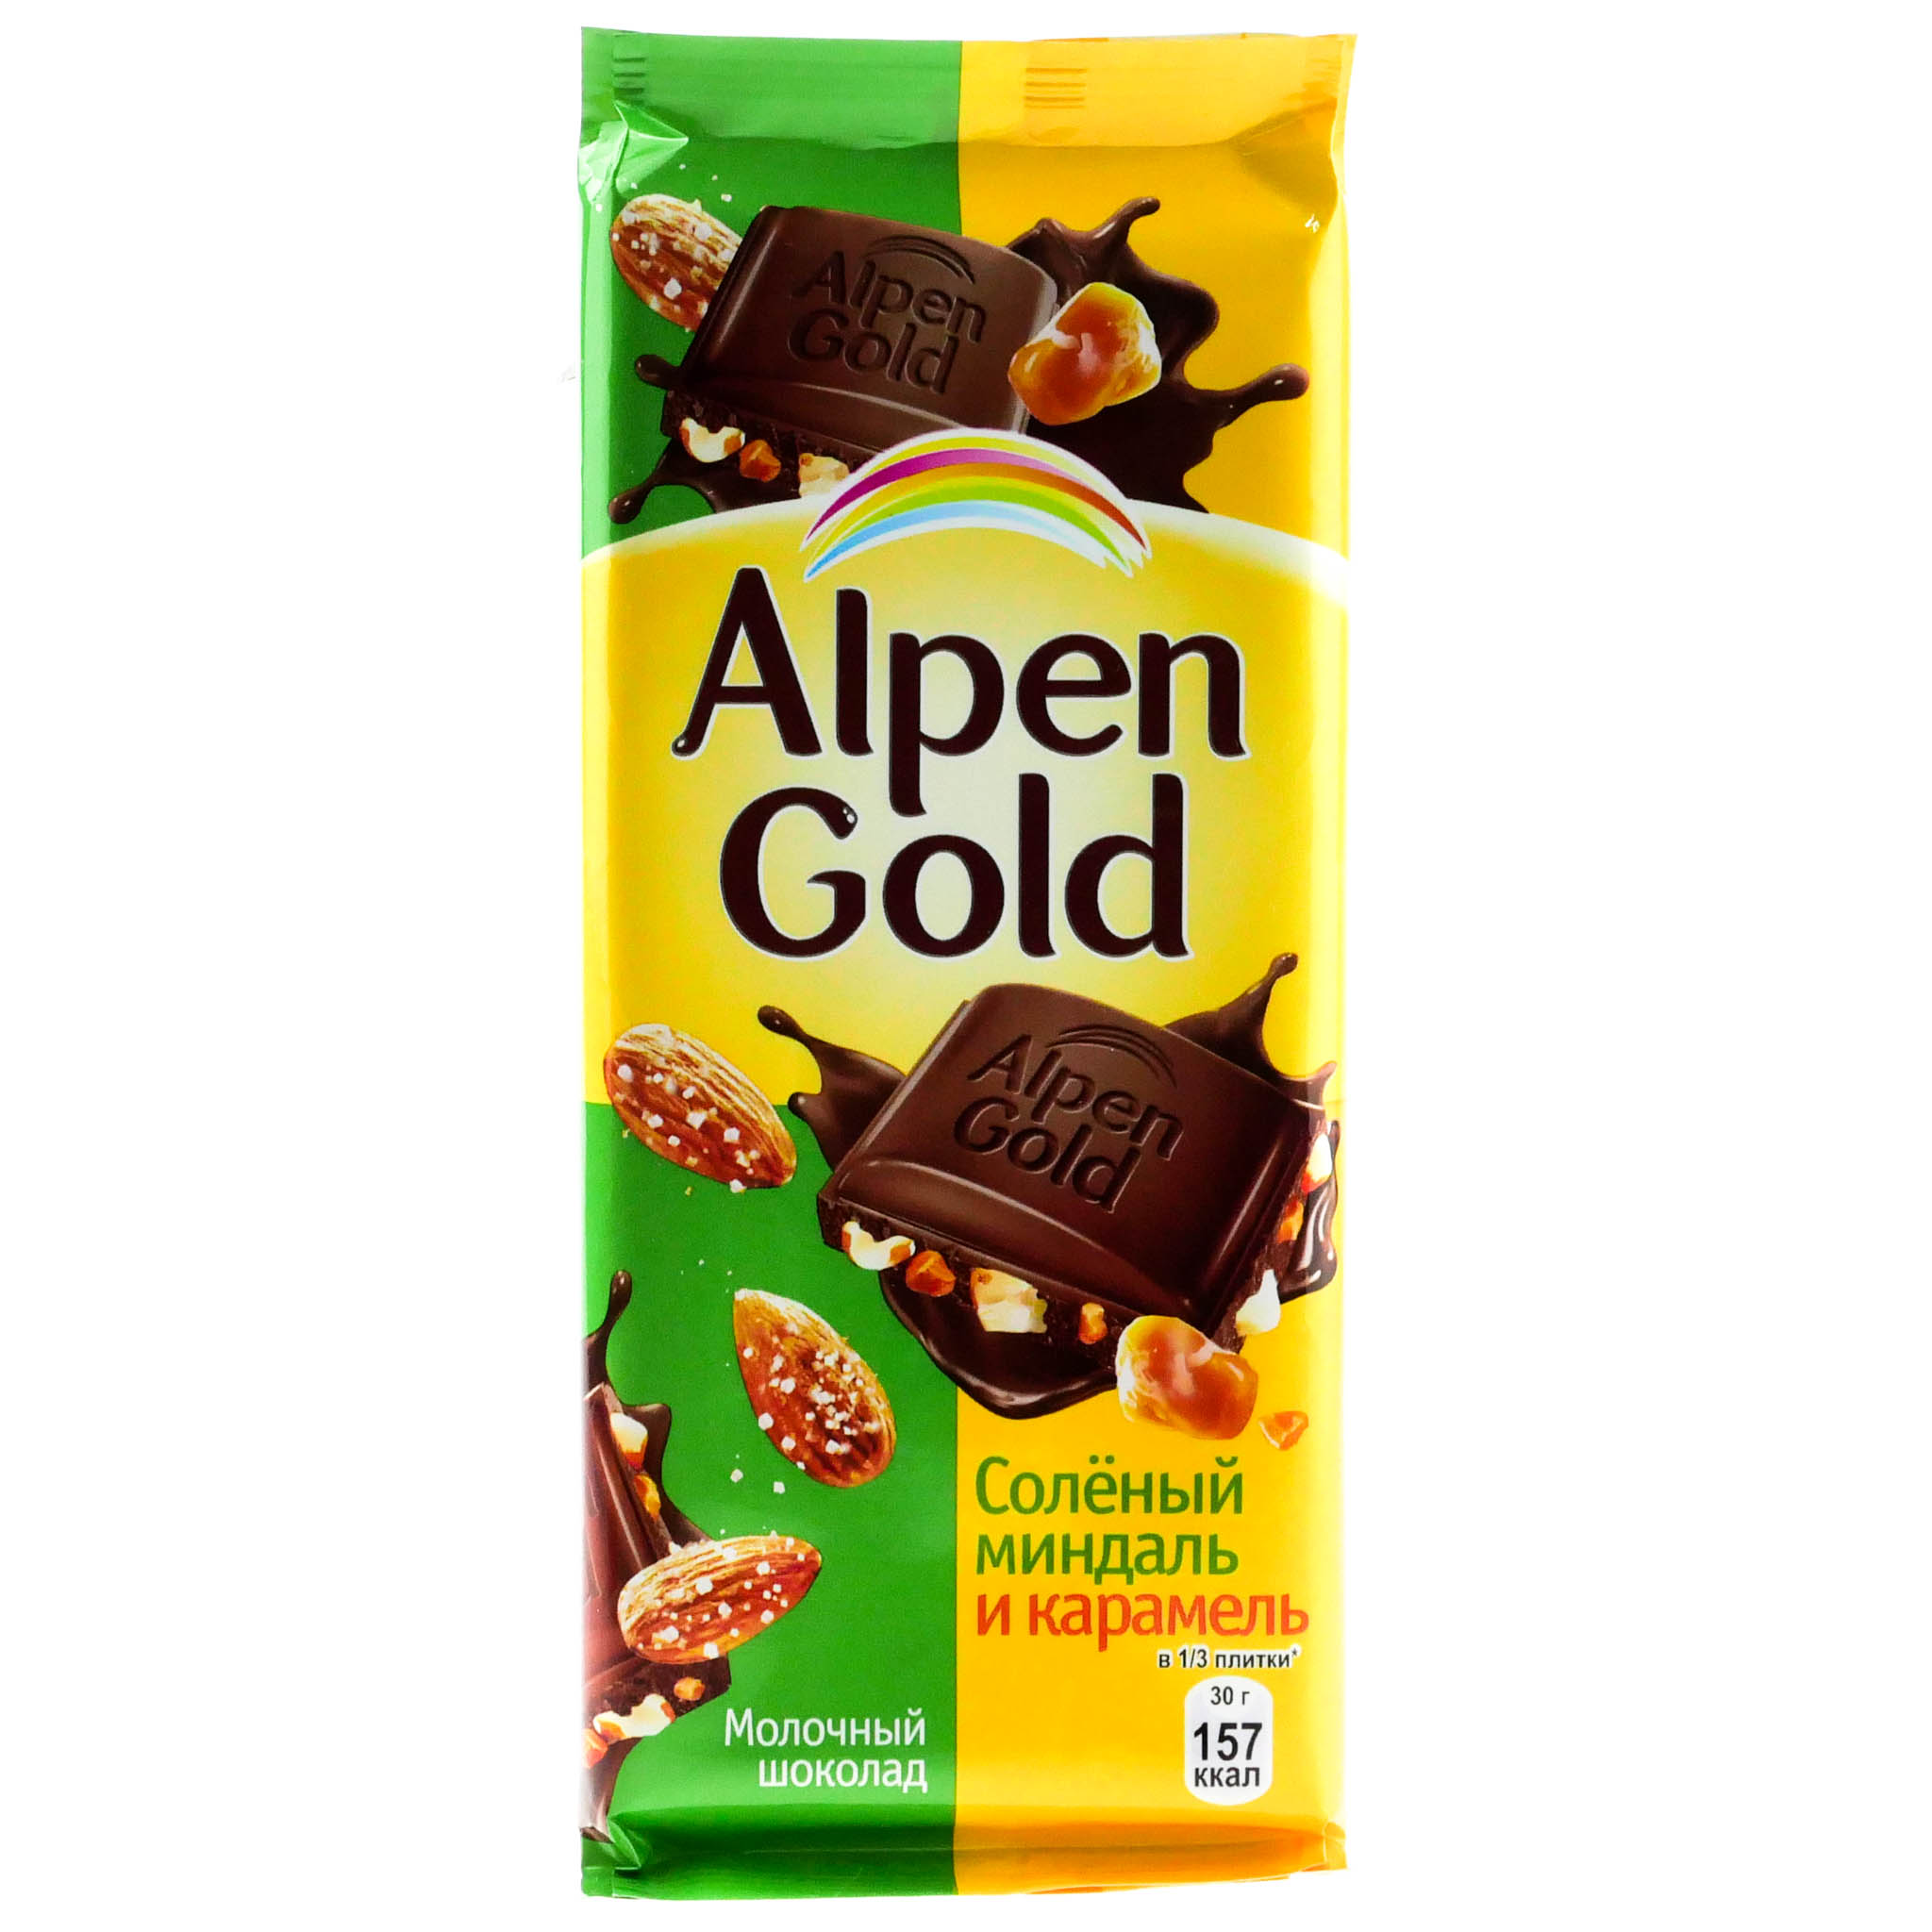 Шоколад Альпен Гольд солёный миндаль карамель 90г